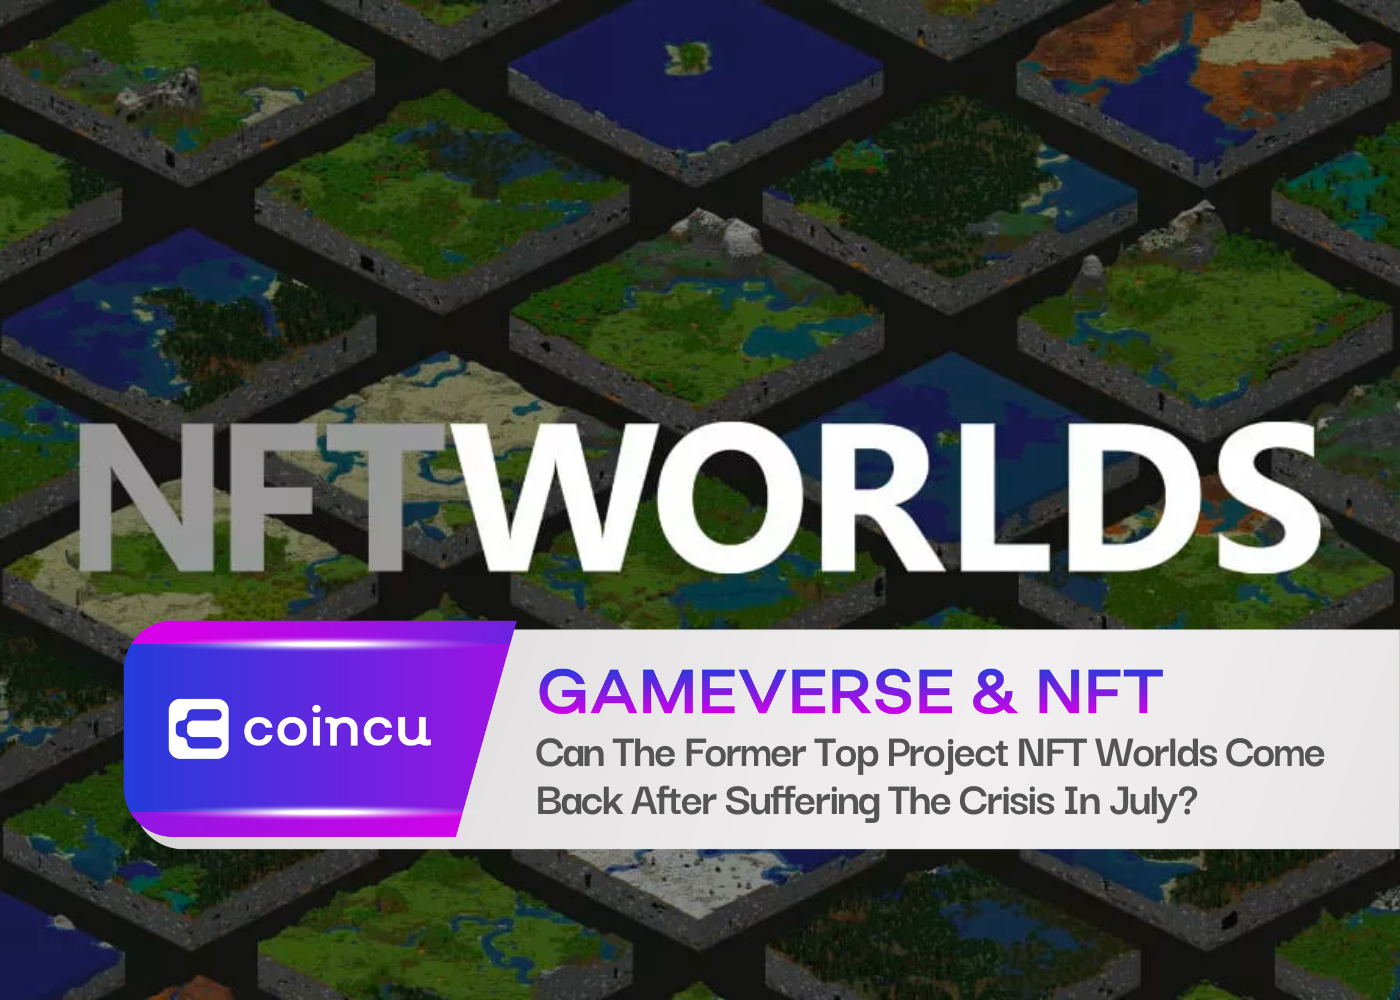 昔日顶级项目NFT Worlds能否在7月遭遇危机后卷土重来？